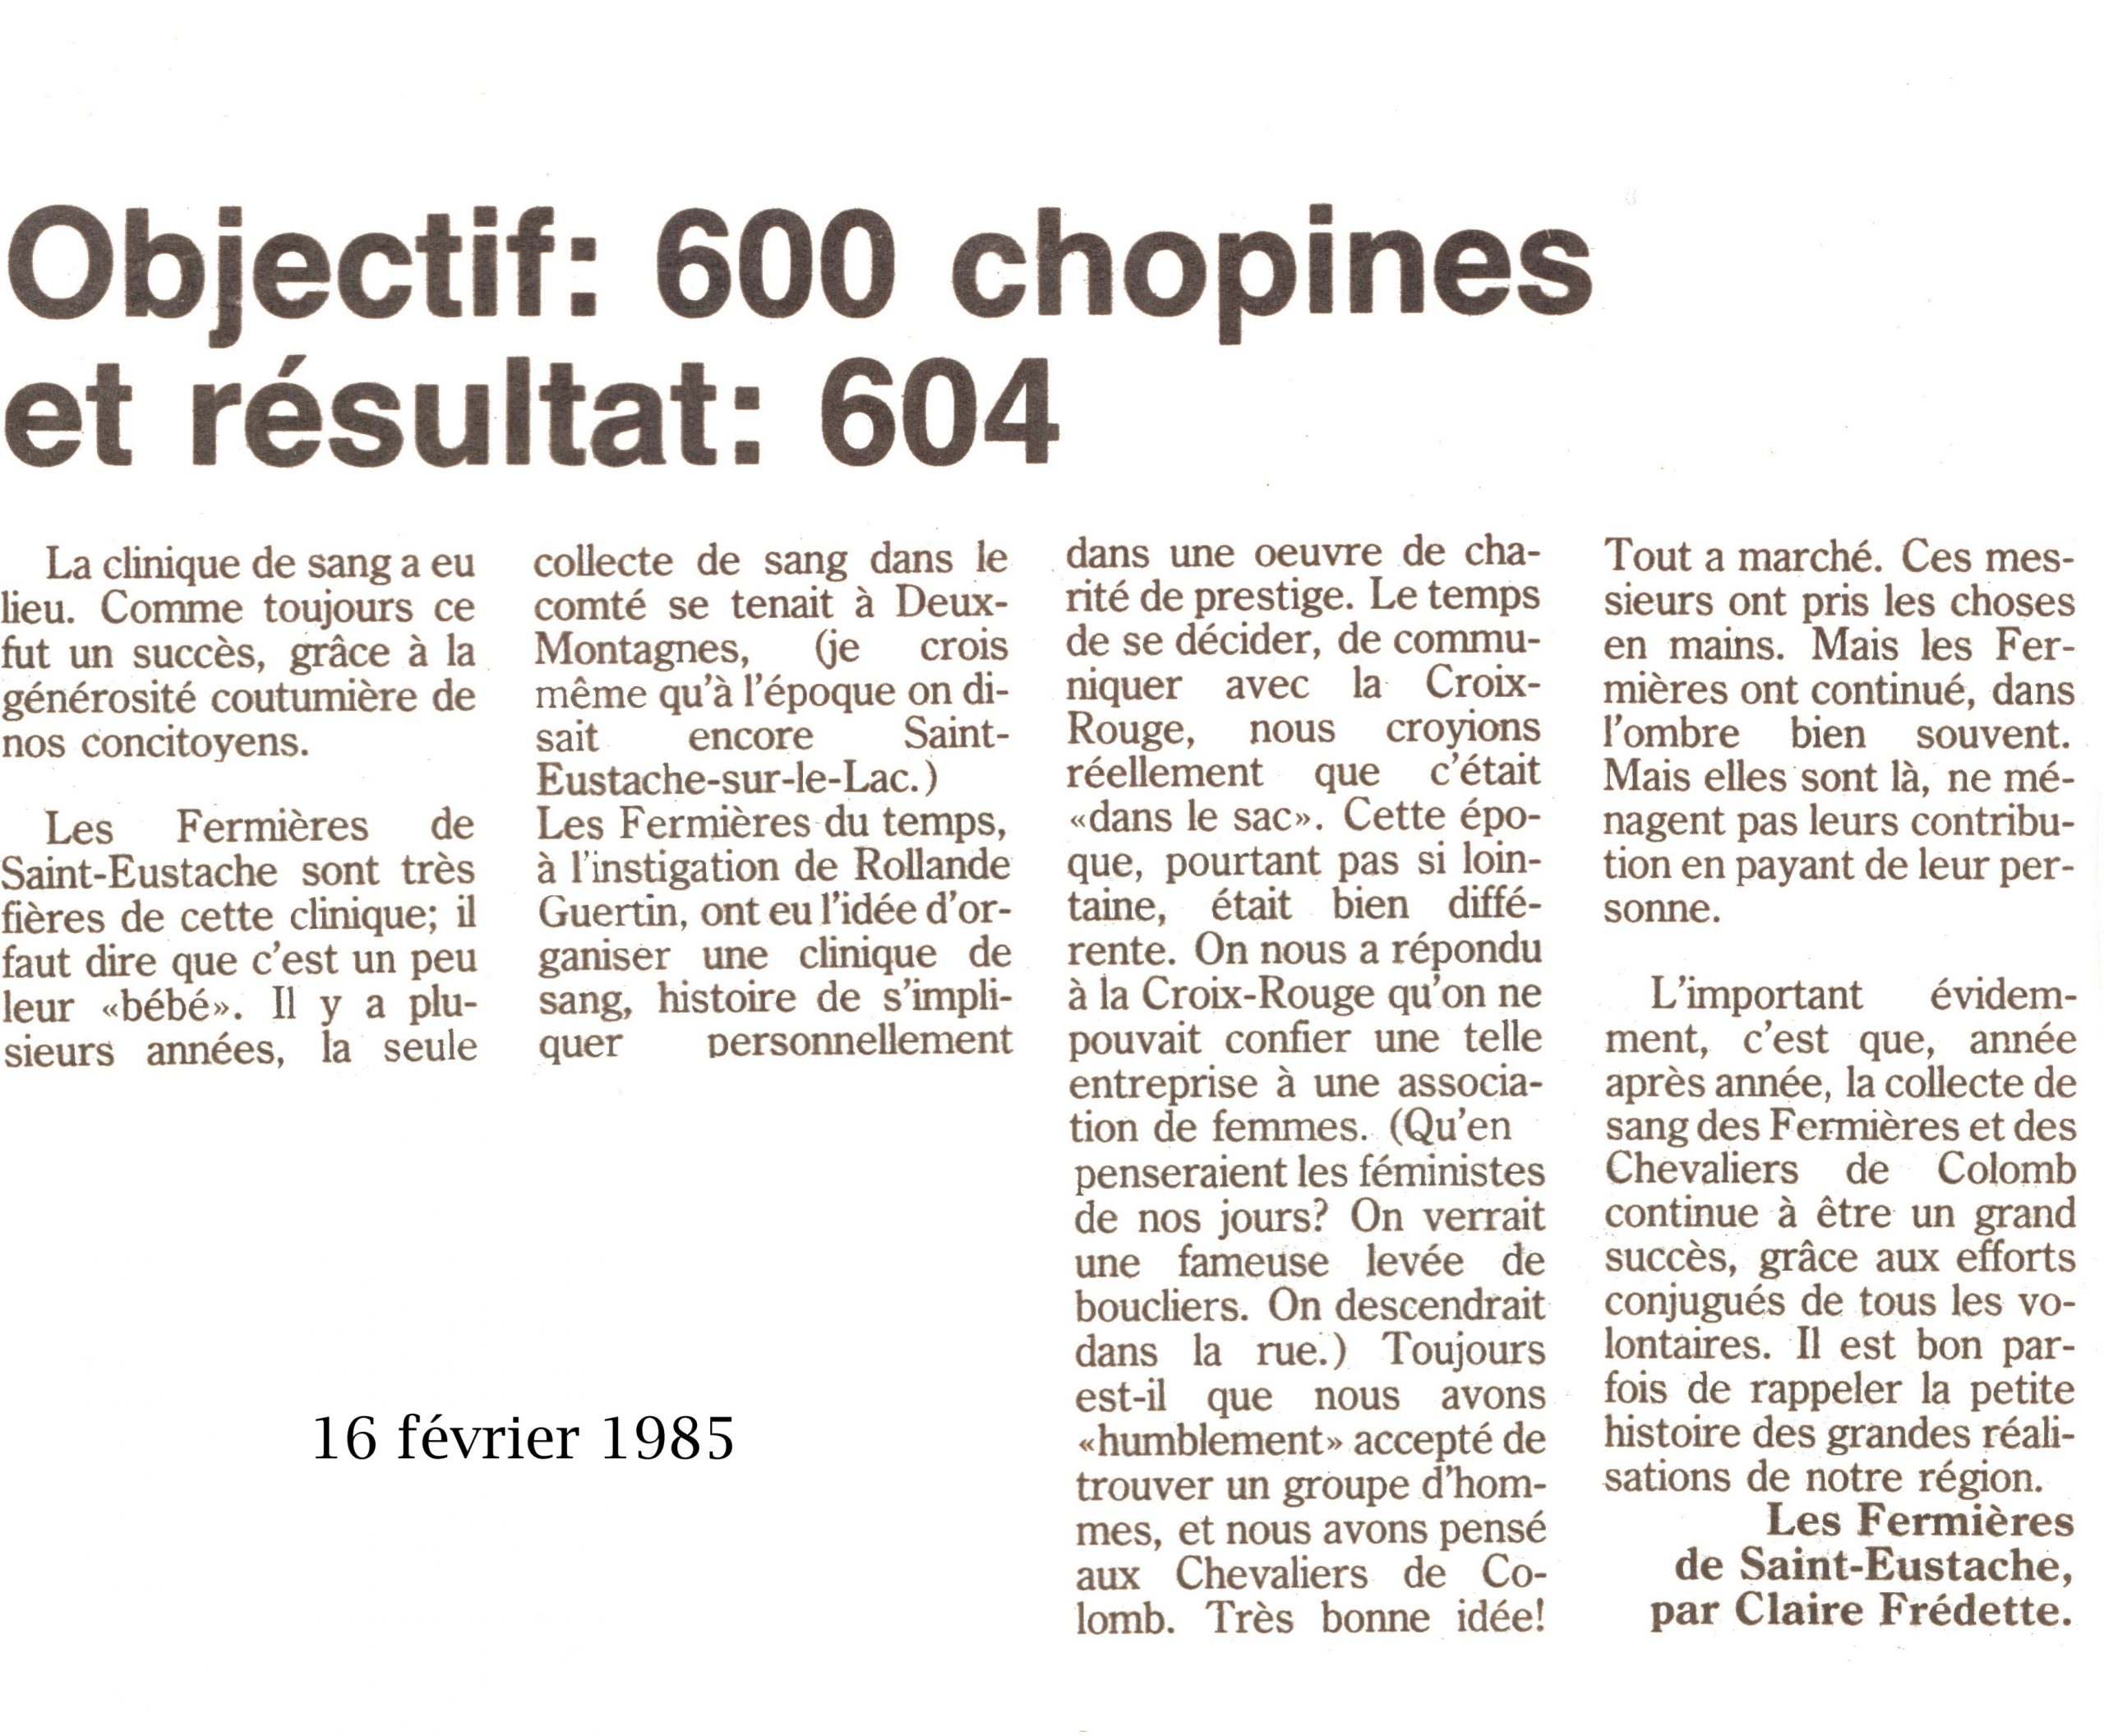 Reproduction d'un article de journal intitulé: "Objectif: 600 chopines et résultat: 604"